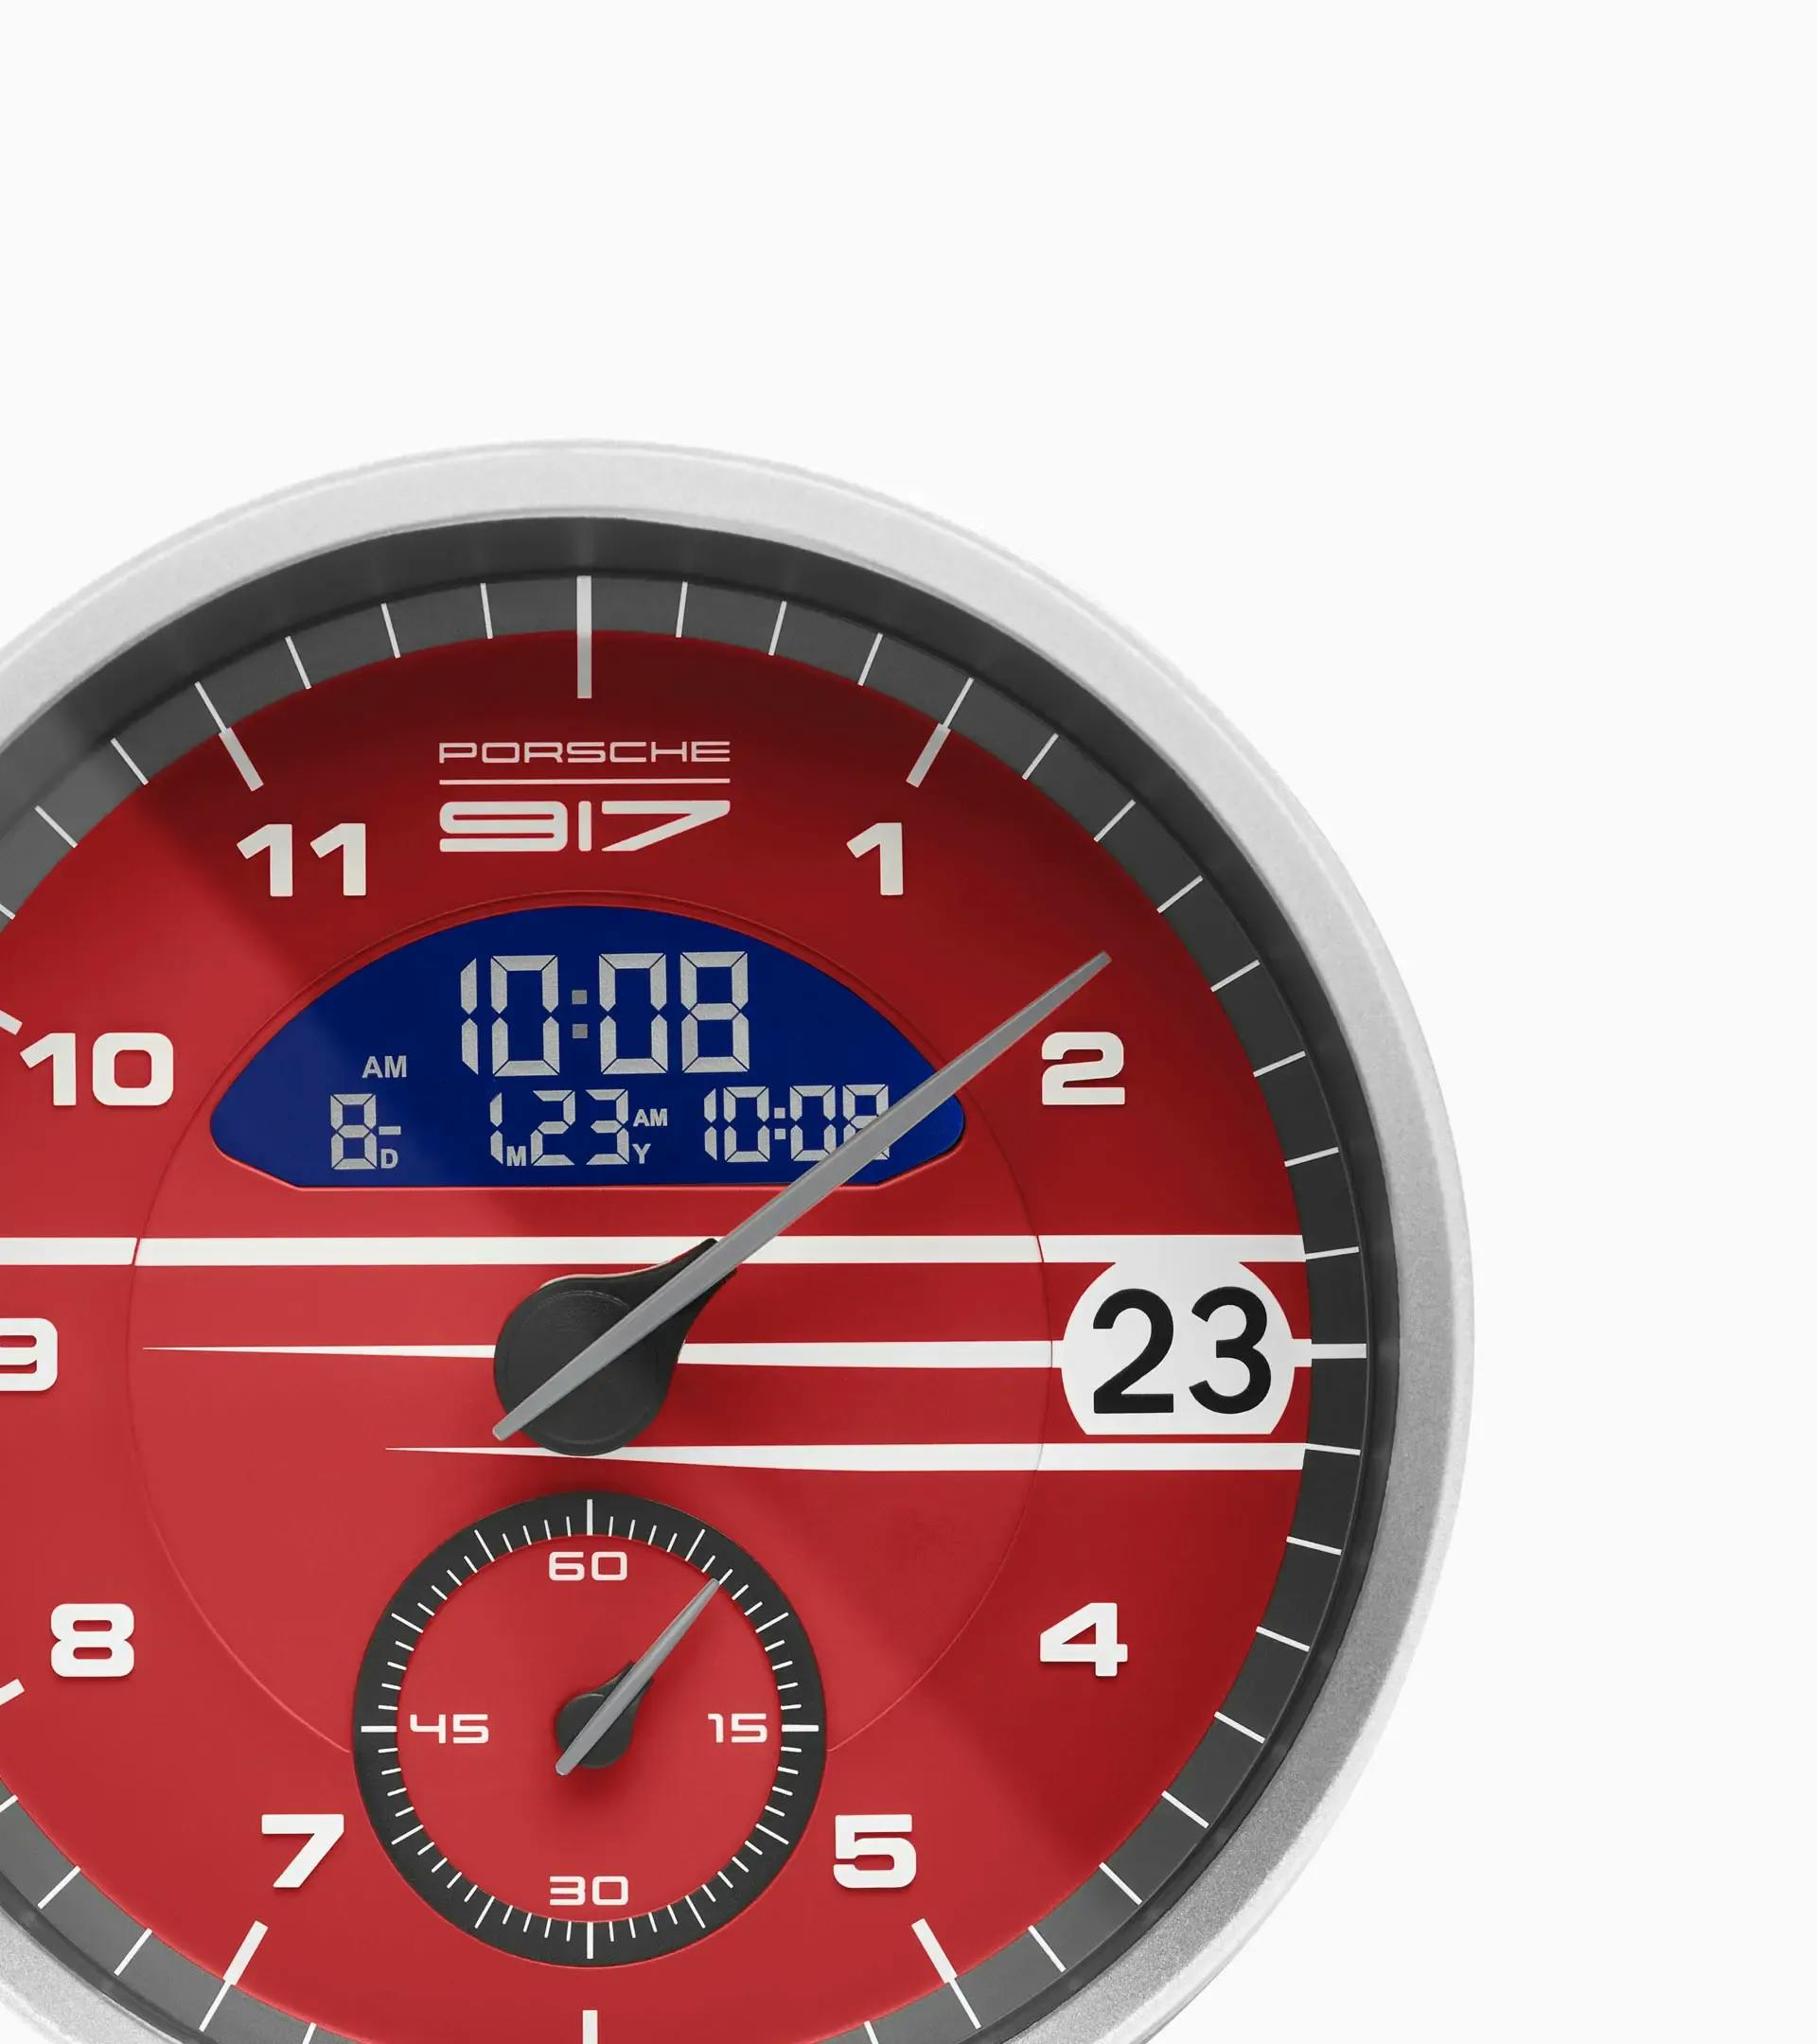 Moscou, Russie - 23 avril 2019 : intérieur d'une voiture de sport Porsche.  Chronomètre de sport avec horloge électronique ou horloge classique  analogique au choix. Options d'installation sur le tableau de bord